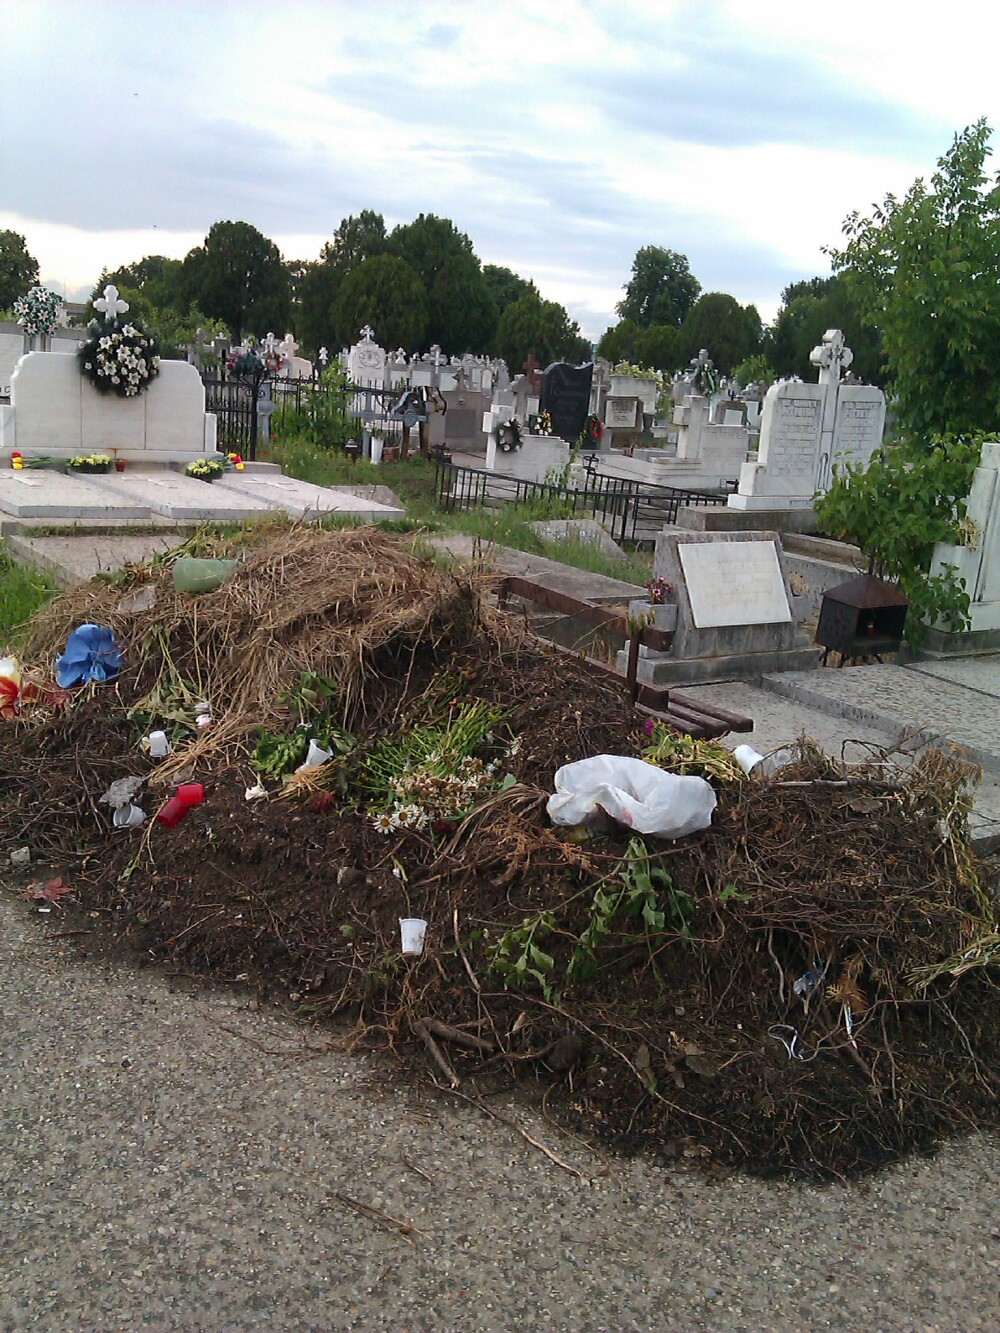 Somnul de veci printre gunoaie. Cimitirele aradene seamana tot mai mult cu rampele de gunoi - Imaginea 1